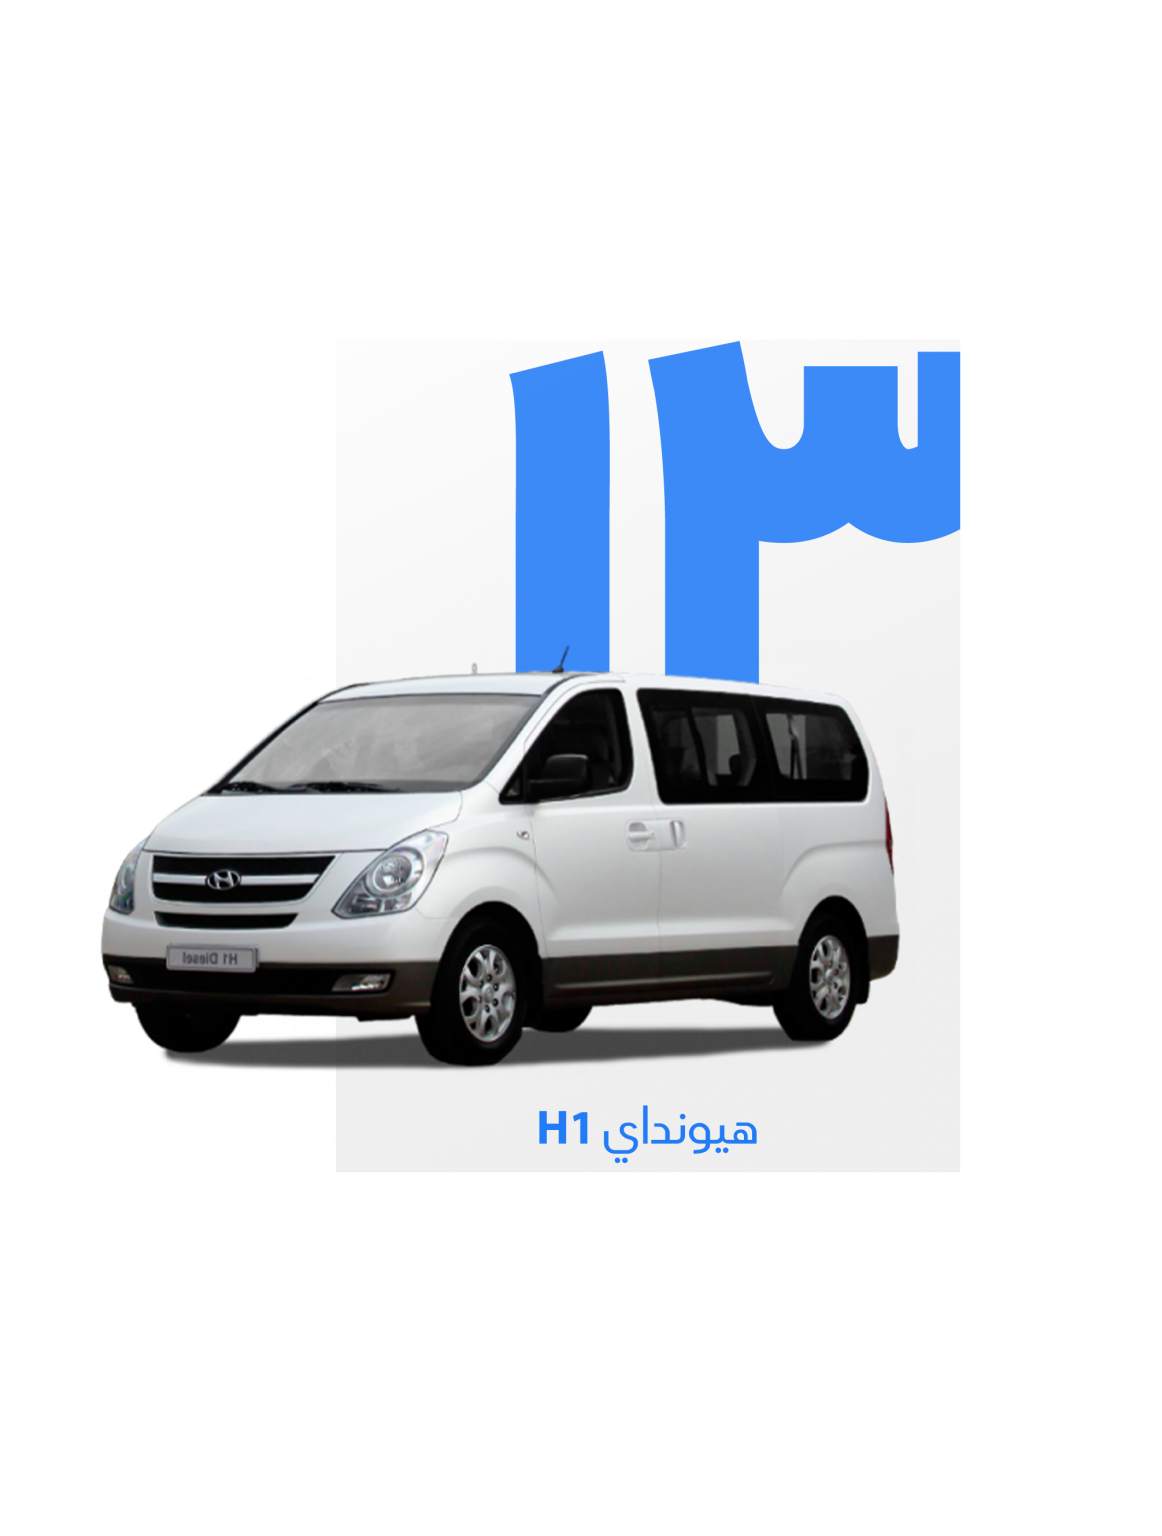 Qruz vehicle Hyundai H1